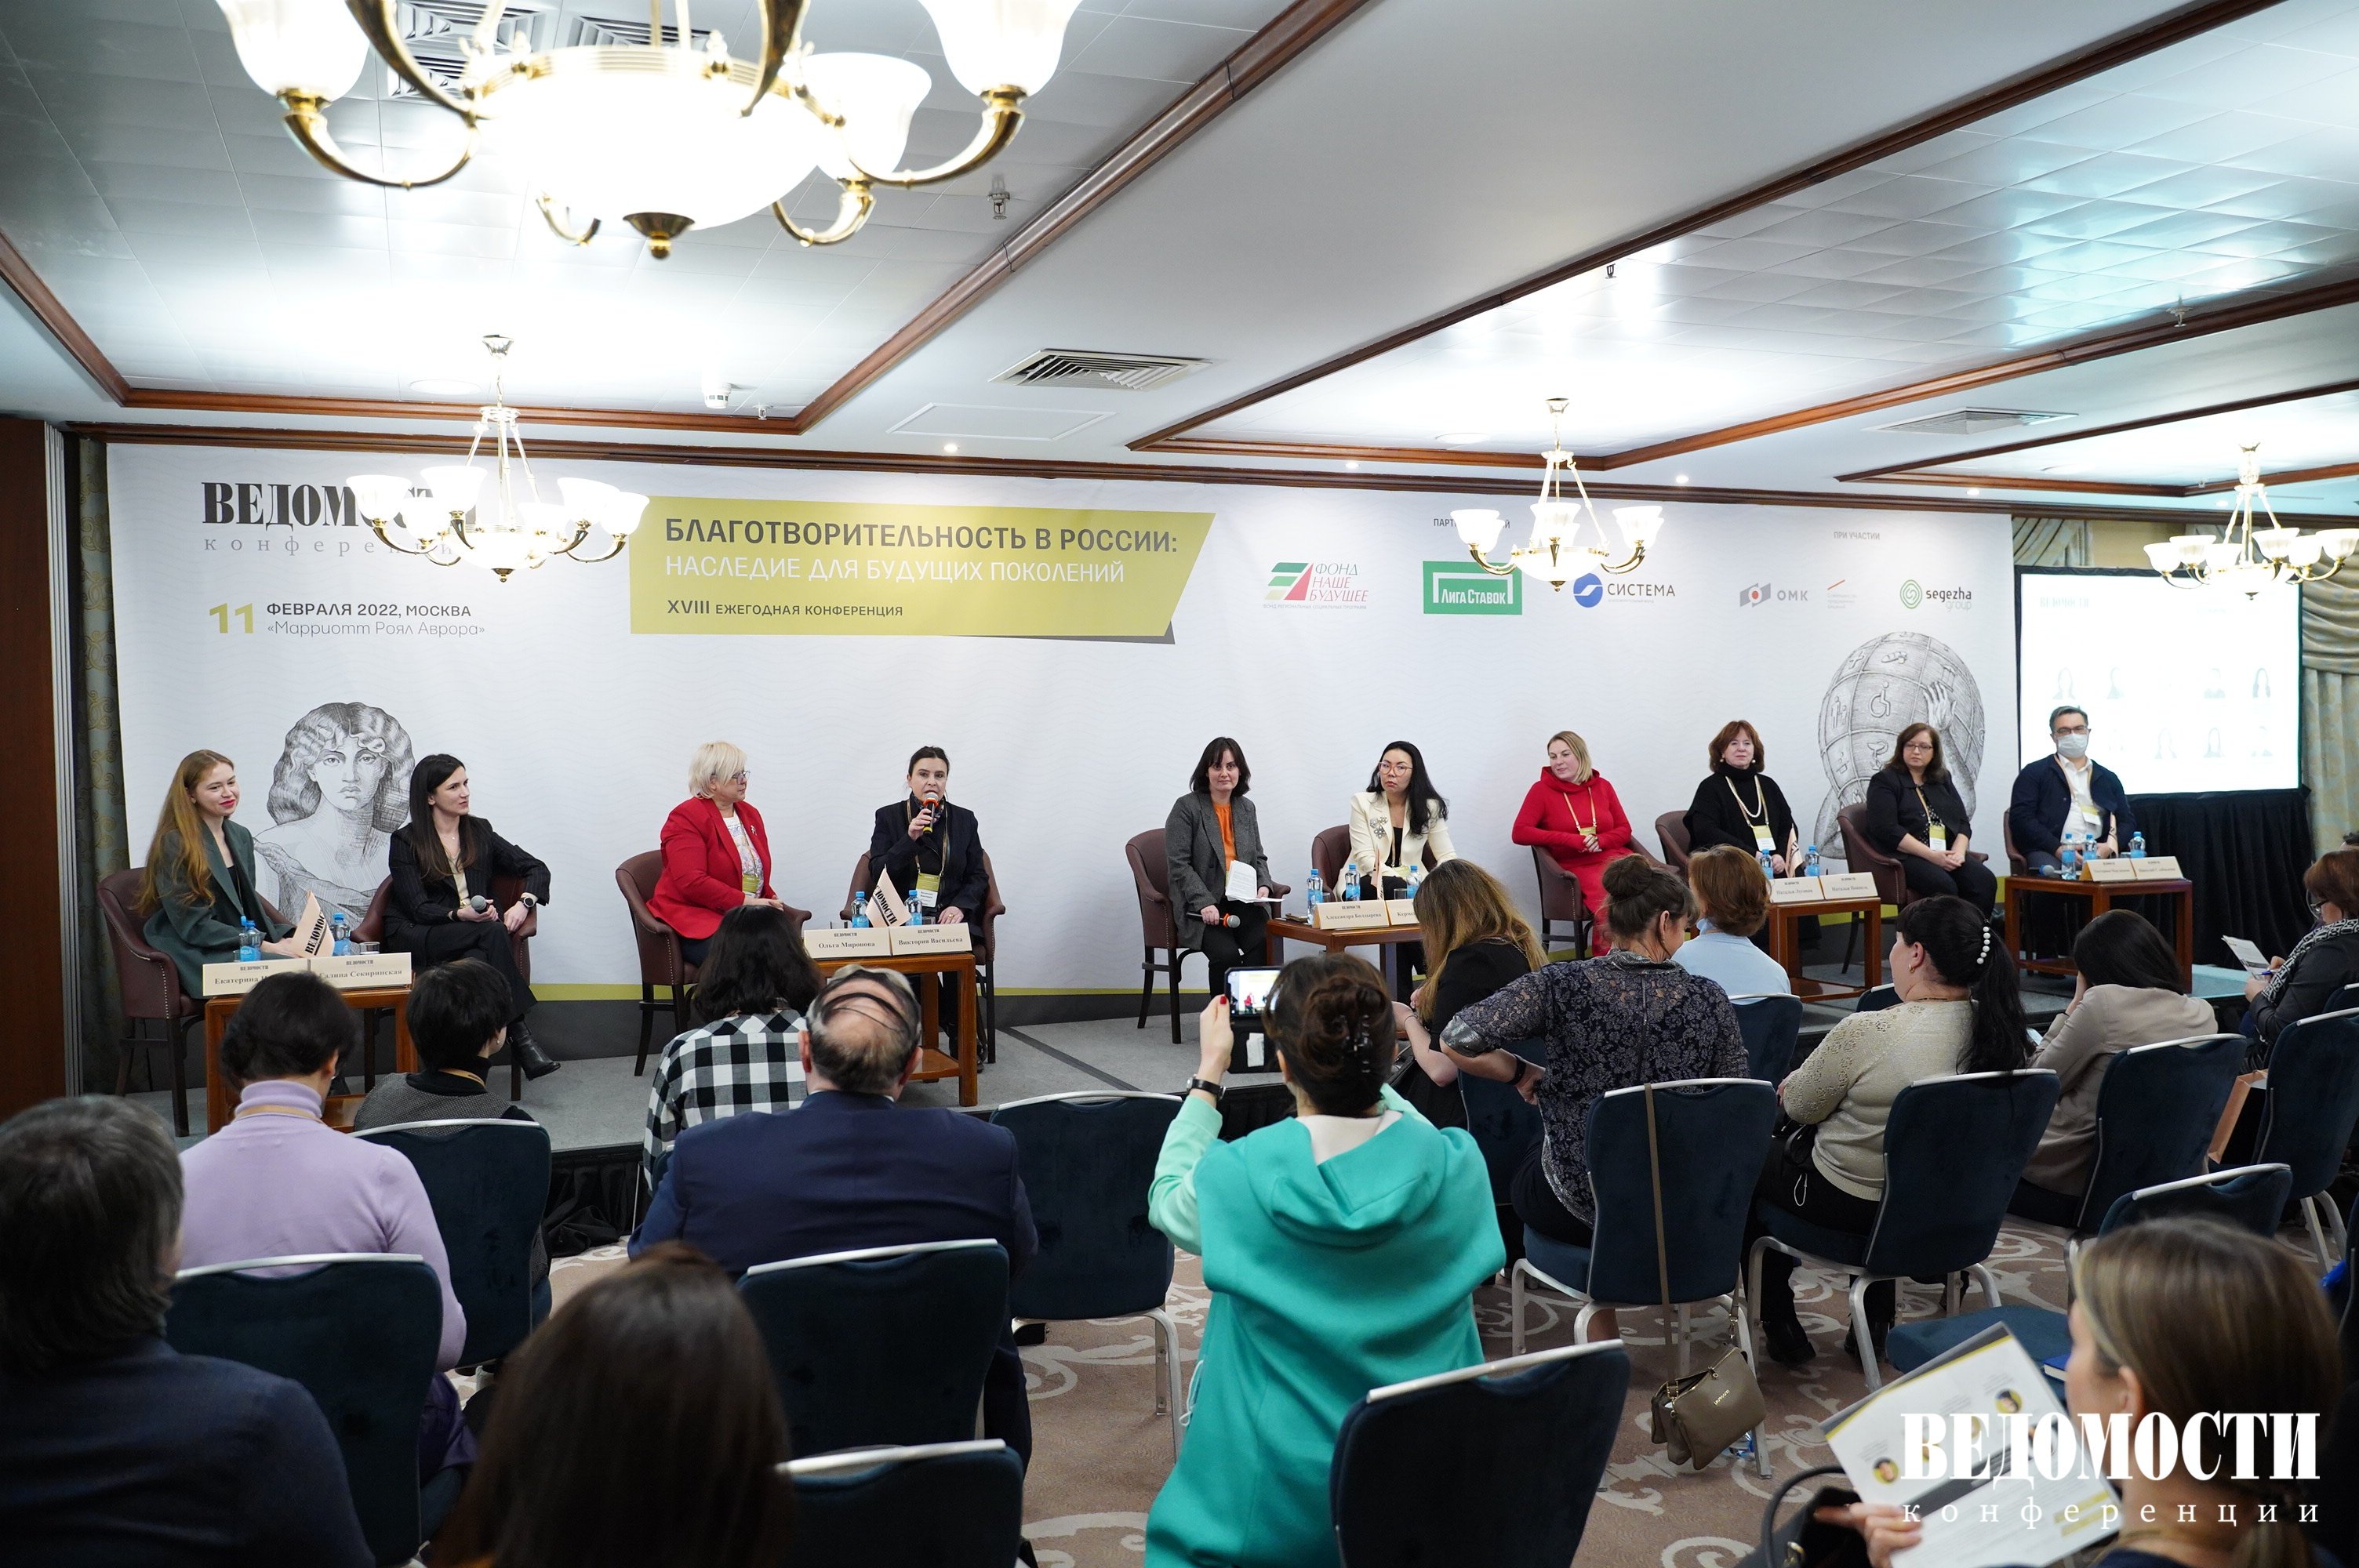 ОМК представила опыт развития социальных и благотворительных проектов на конференции «Ведомостей»